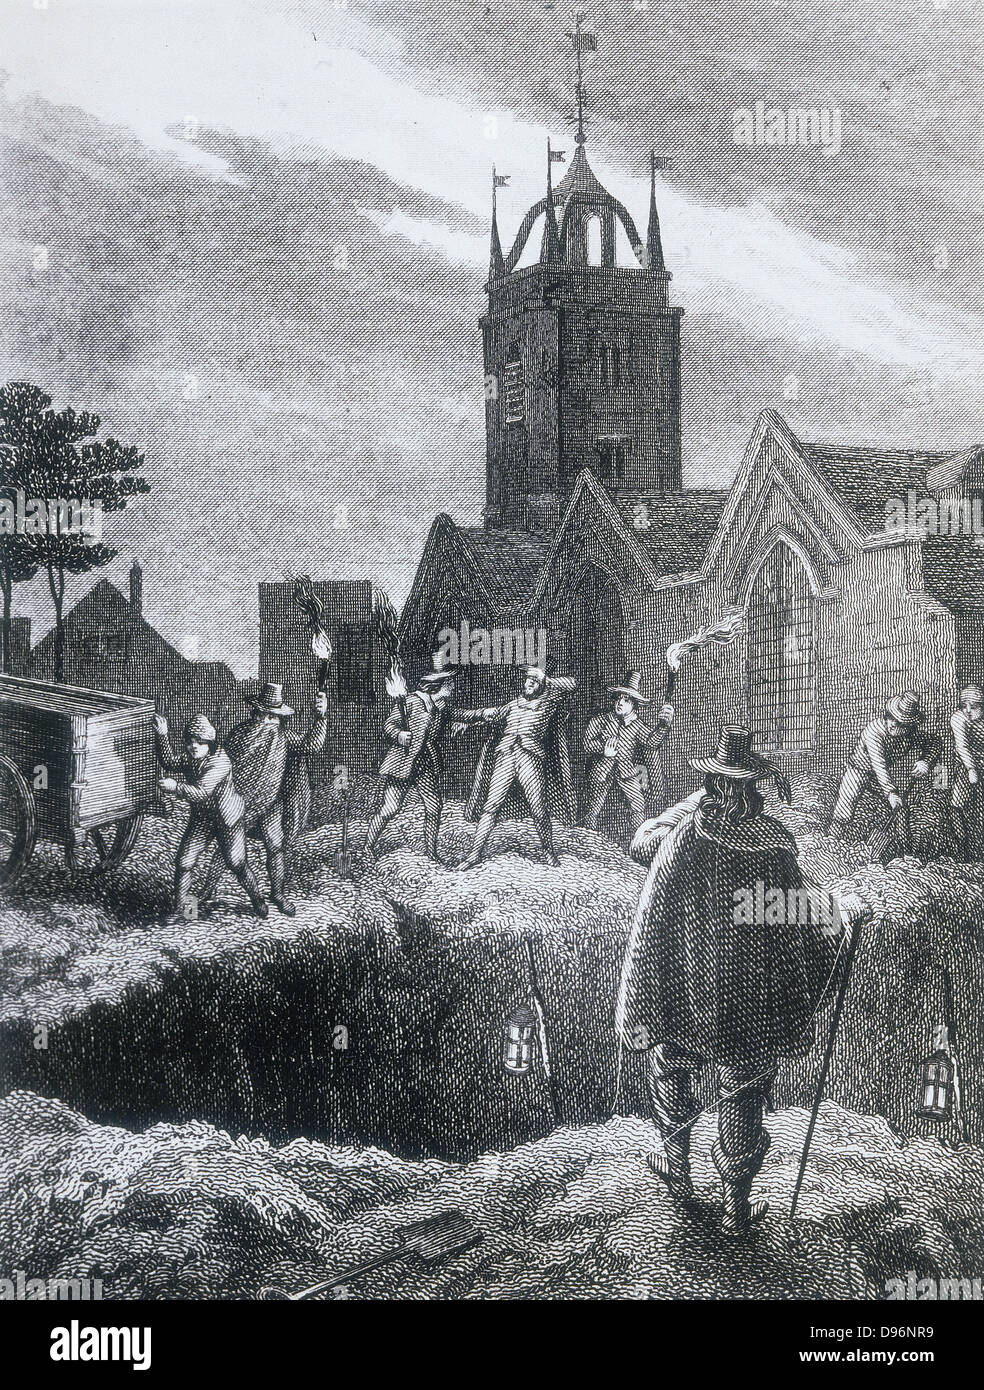 Einlieferung Einrichtungen der Pest zu einem gemeinsamen Grab in der Pest pit-Pest von London, 1665. Abbildung aus dem 19. Jahrhundert. Stockfoto